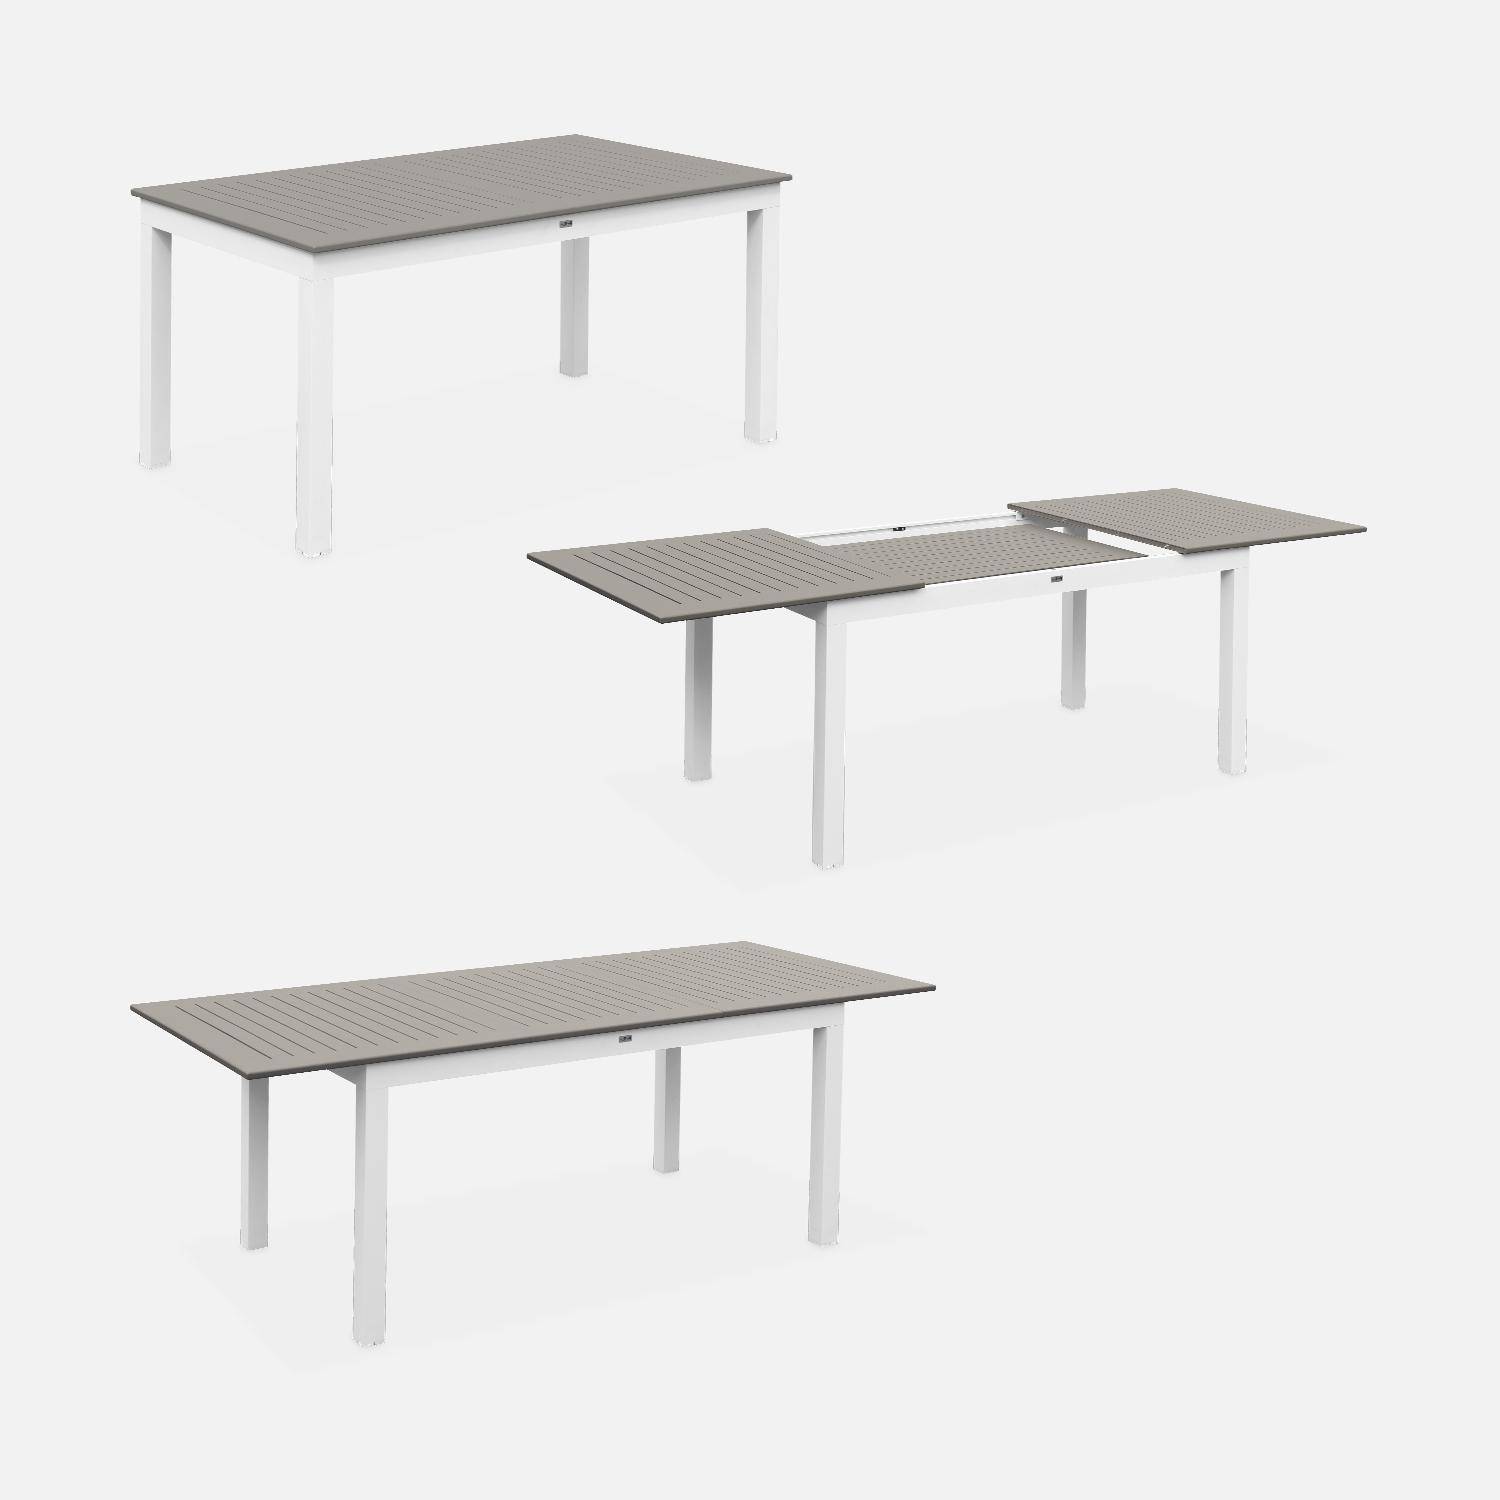 Set da giardino con tavolo allungabile - modello: Chicago 210, colore: Talpa - Tavolo in alluminio, dimensioni: 150/210cm con prolunga e 6 sedute in textilene,sweeek,Photo5